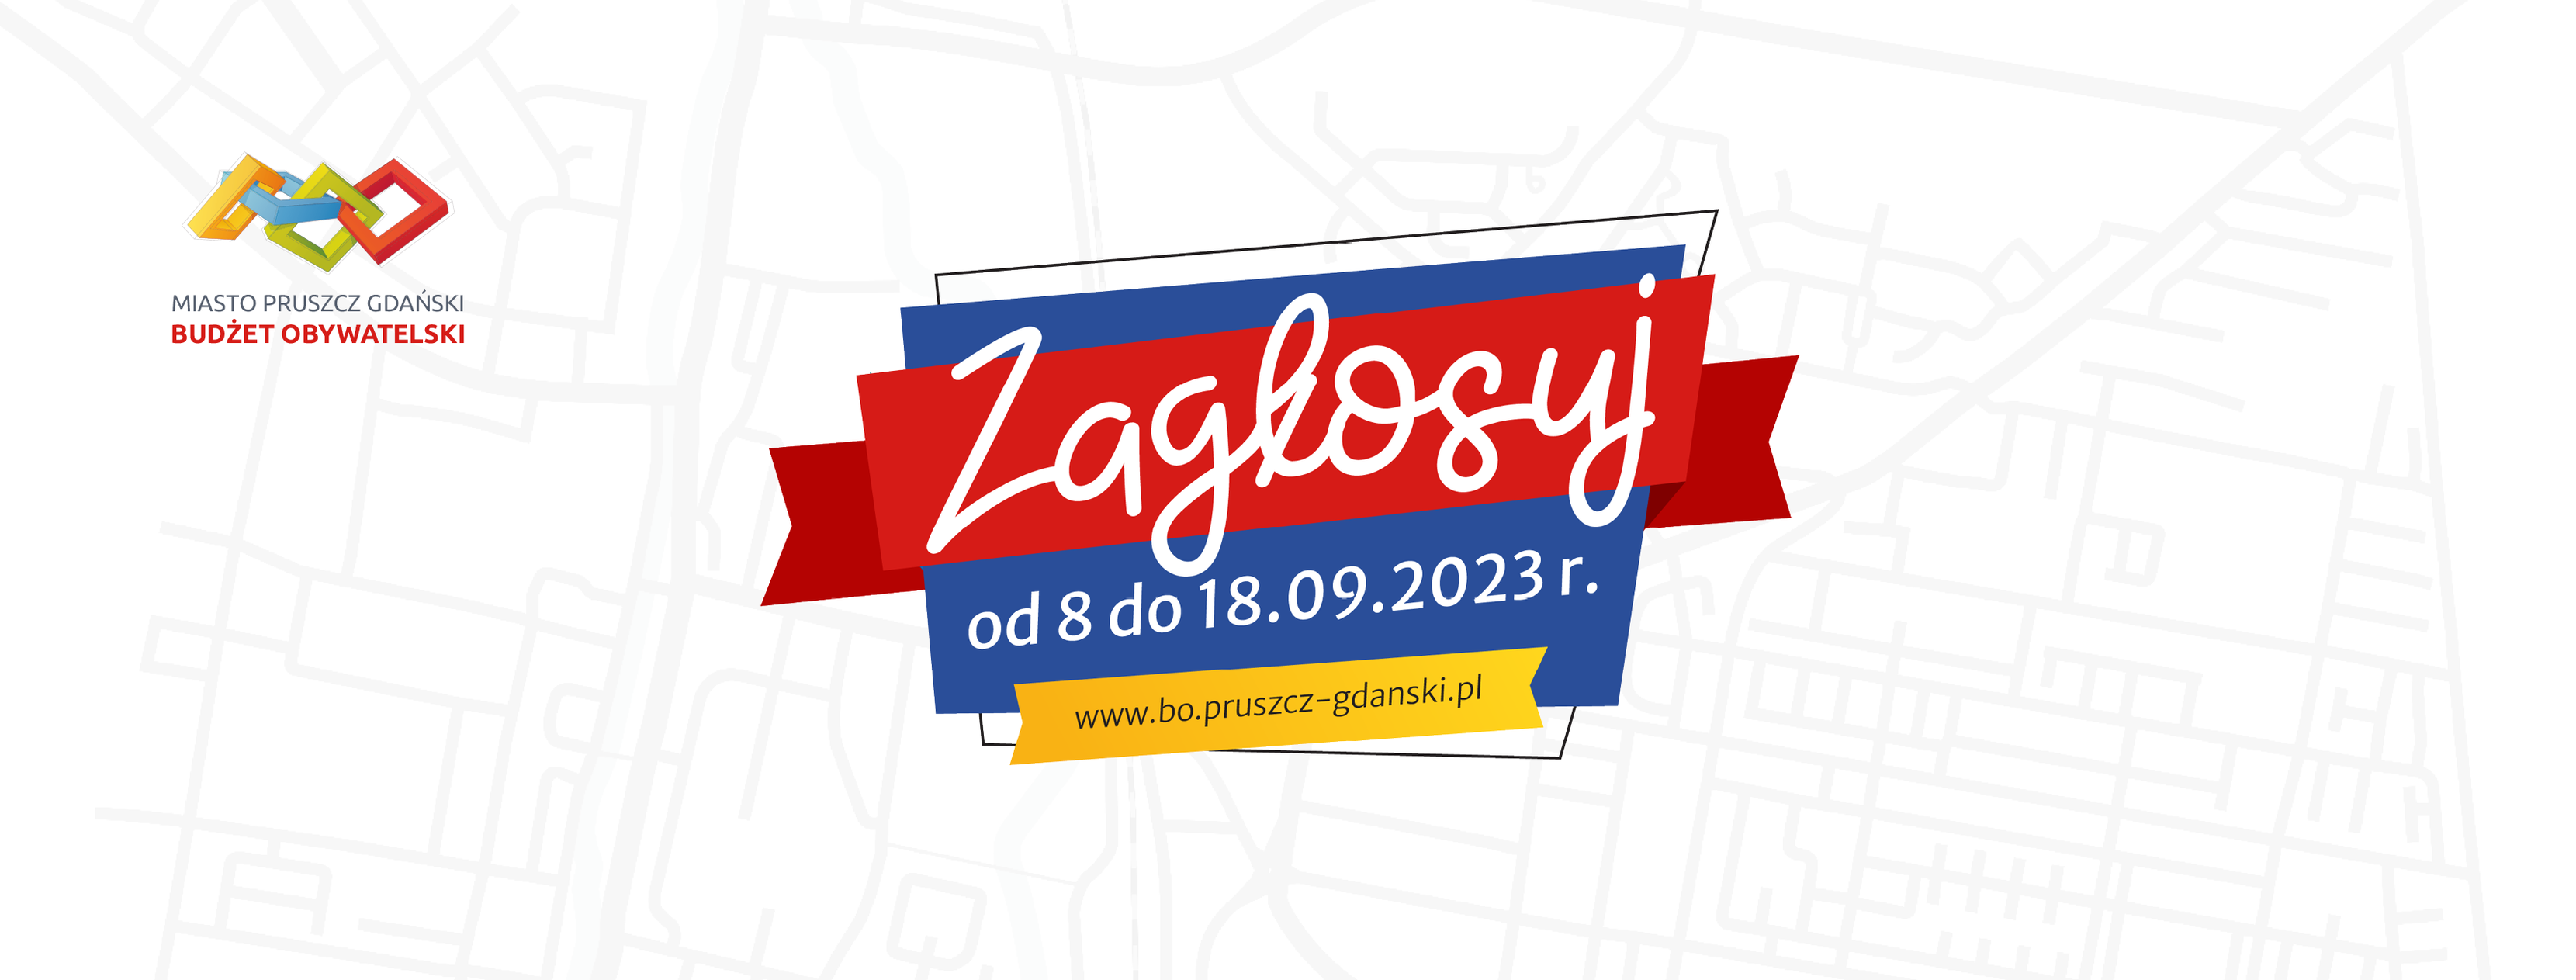 Napisy: Miasto Pruszcz Gdański. Budżet Obywatelski. Zagłosuj od 8 do 18.09.2023 r. www.bo.pruszcz-gdanski.pl